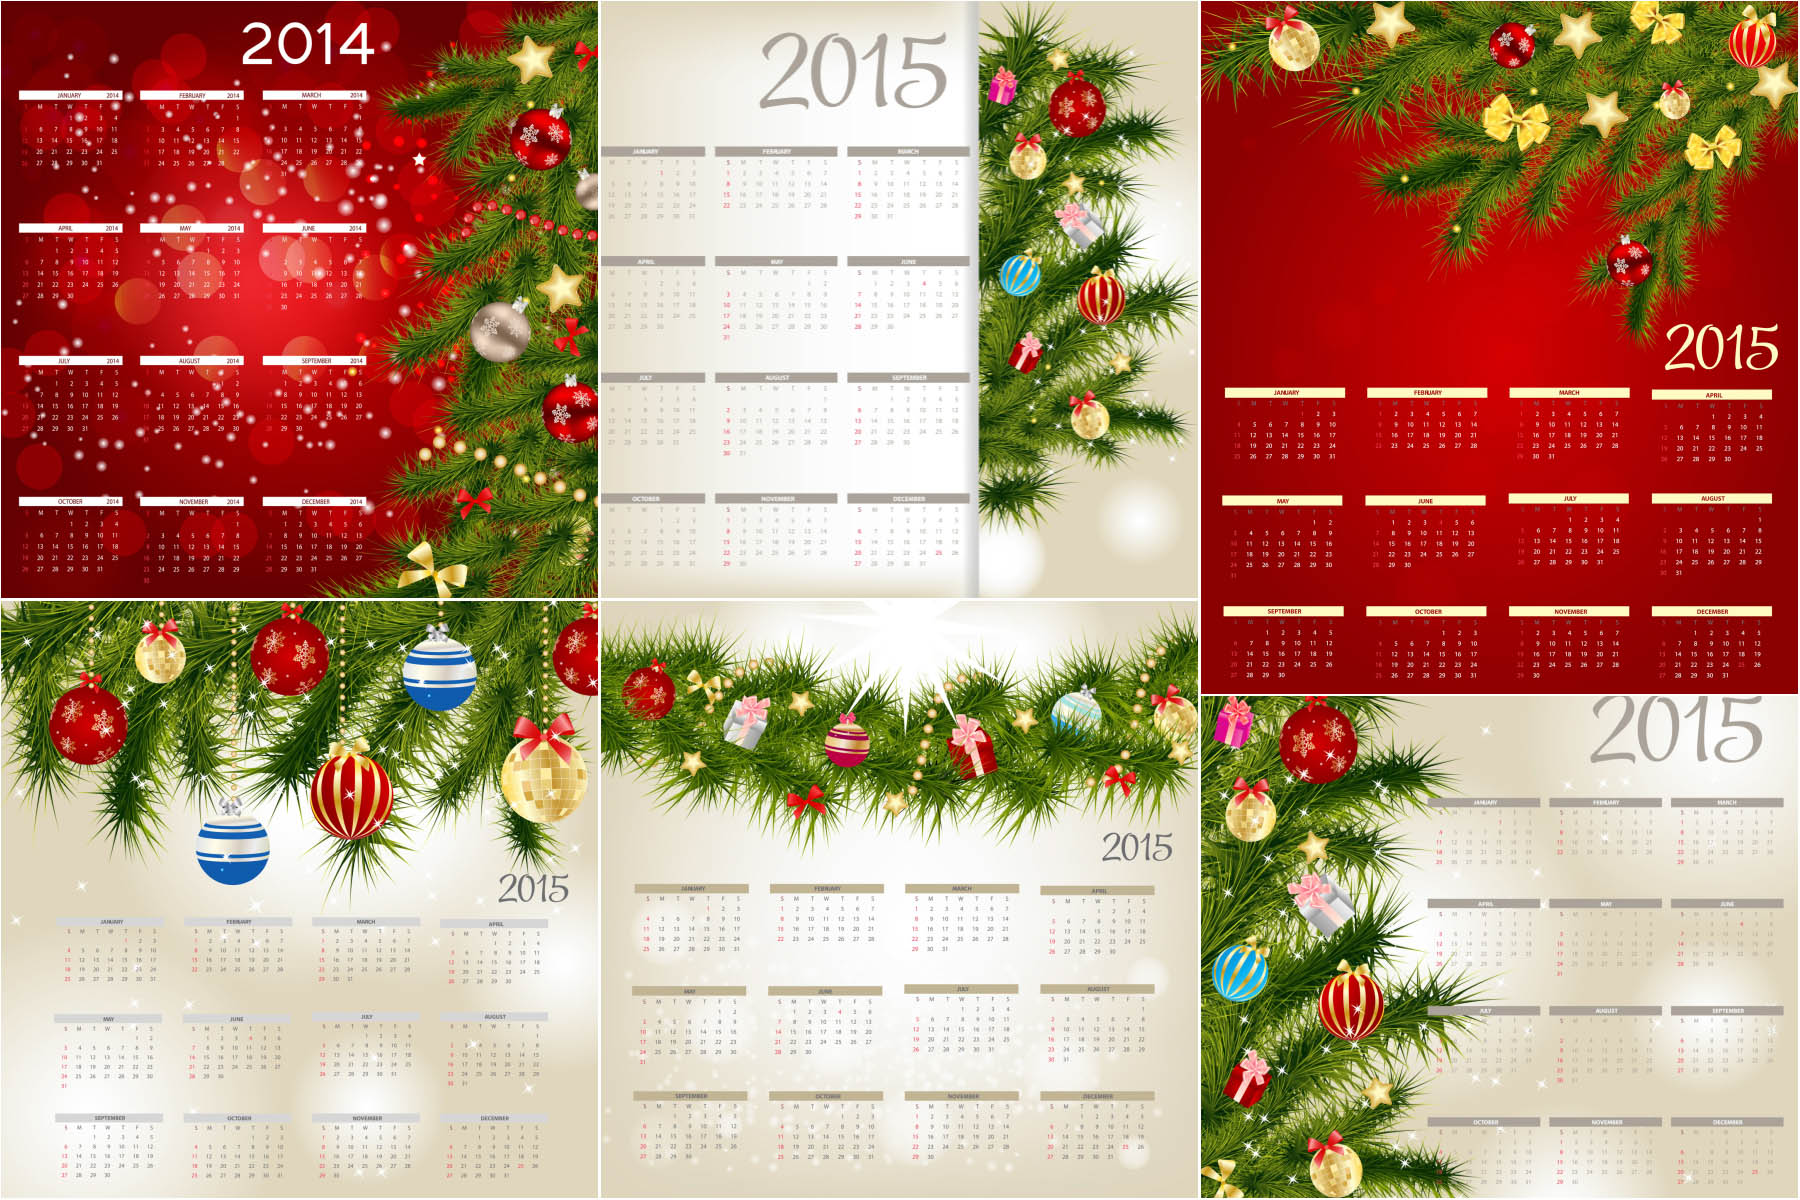 Christmas calendar 2015 with Christmas toys and Christmas tree branch